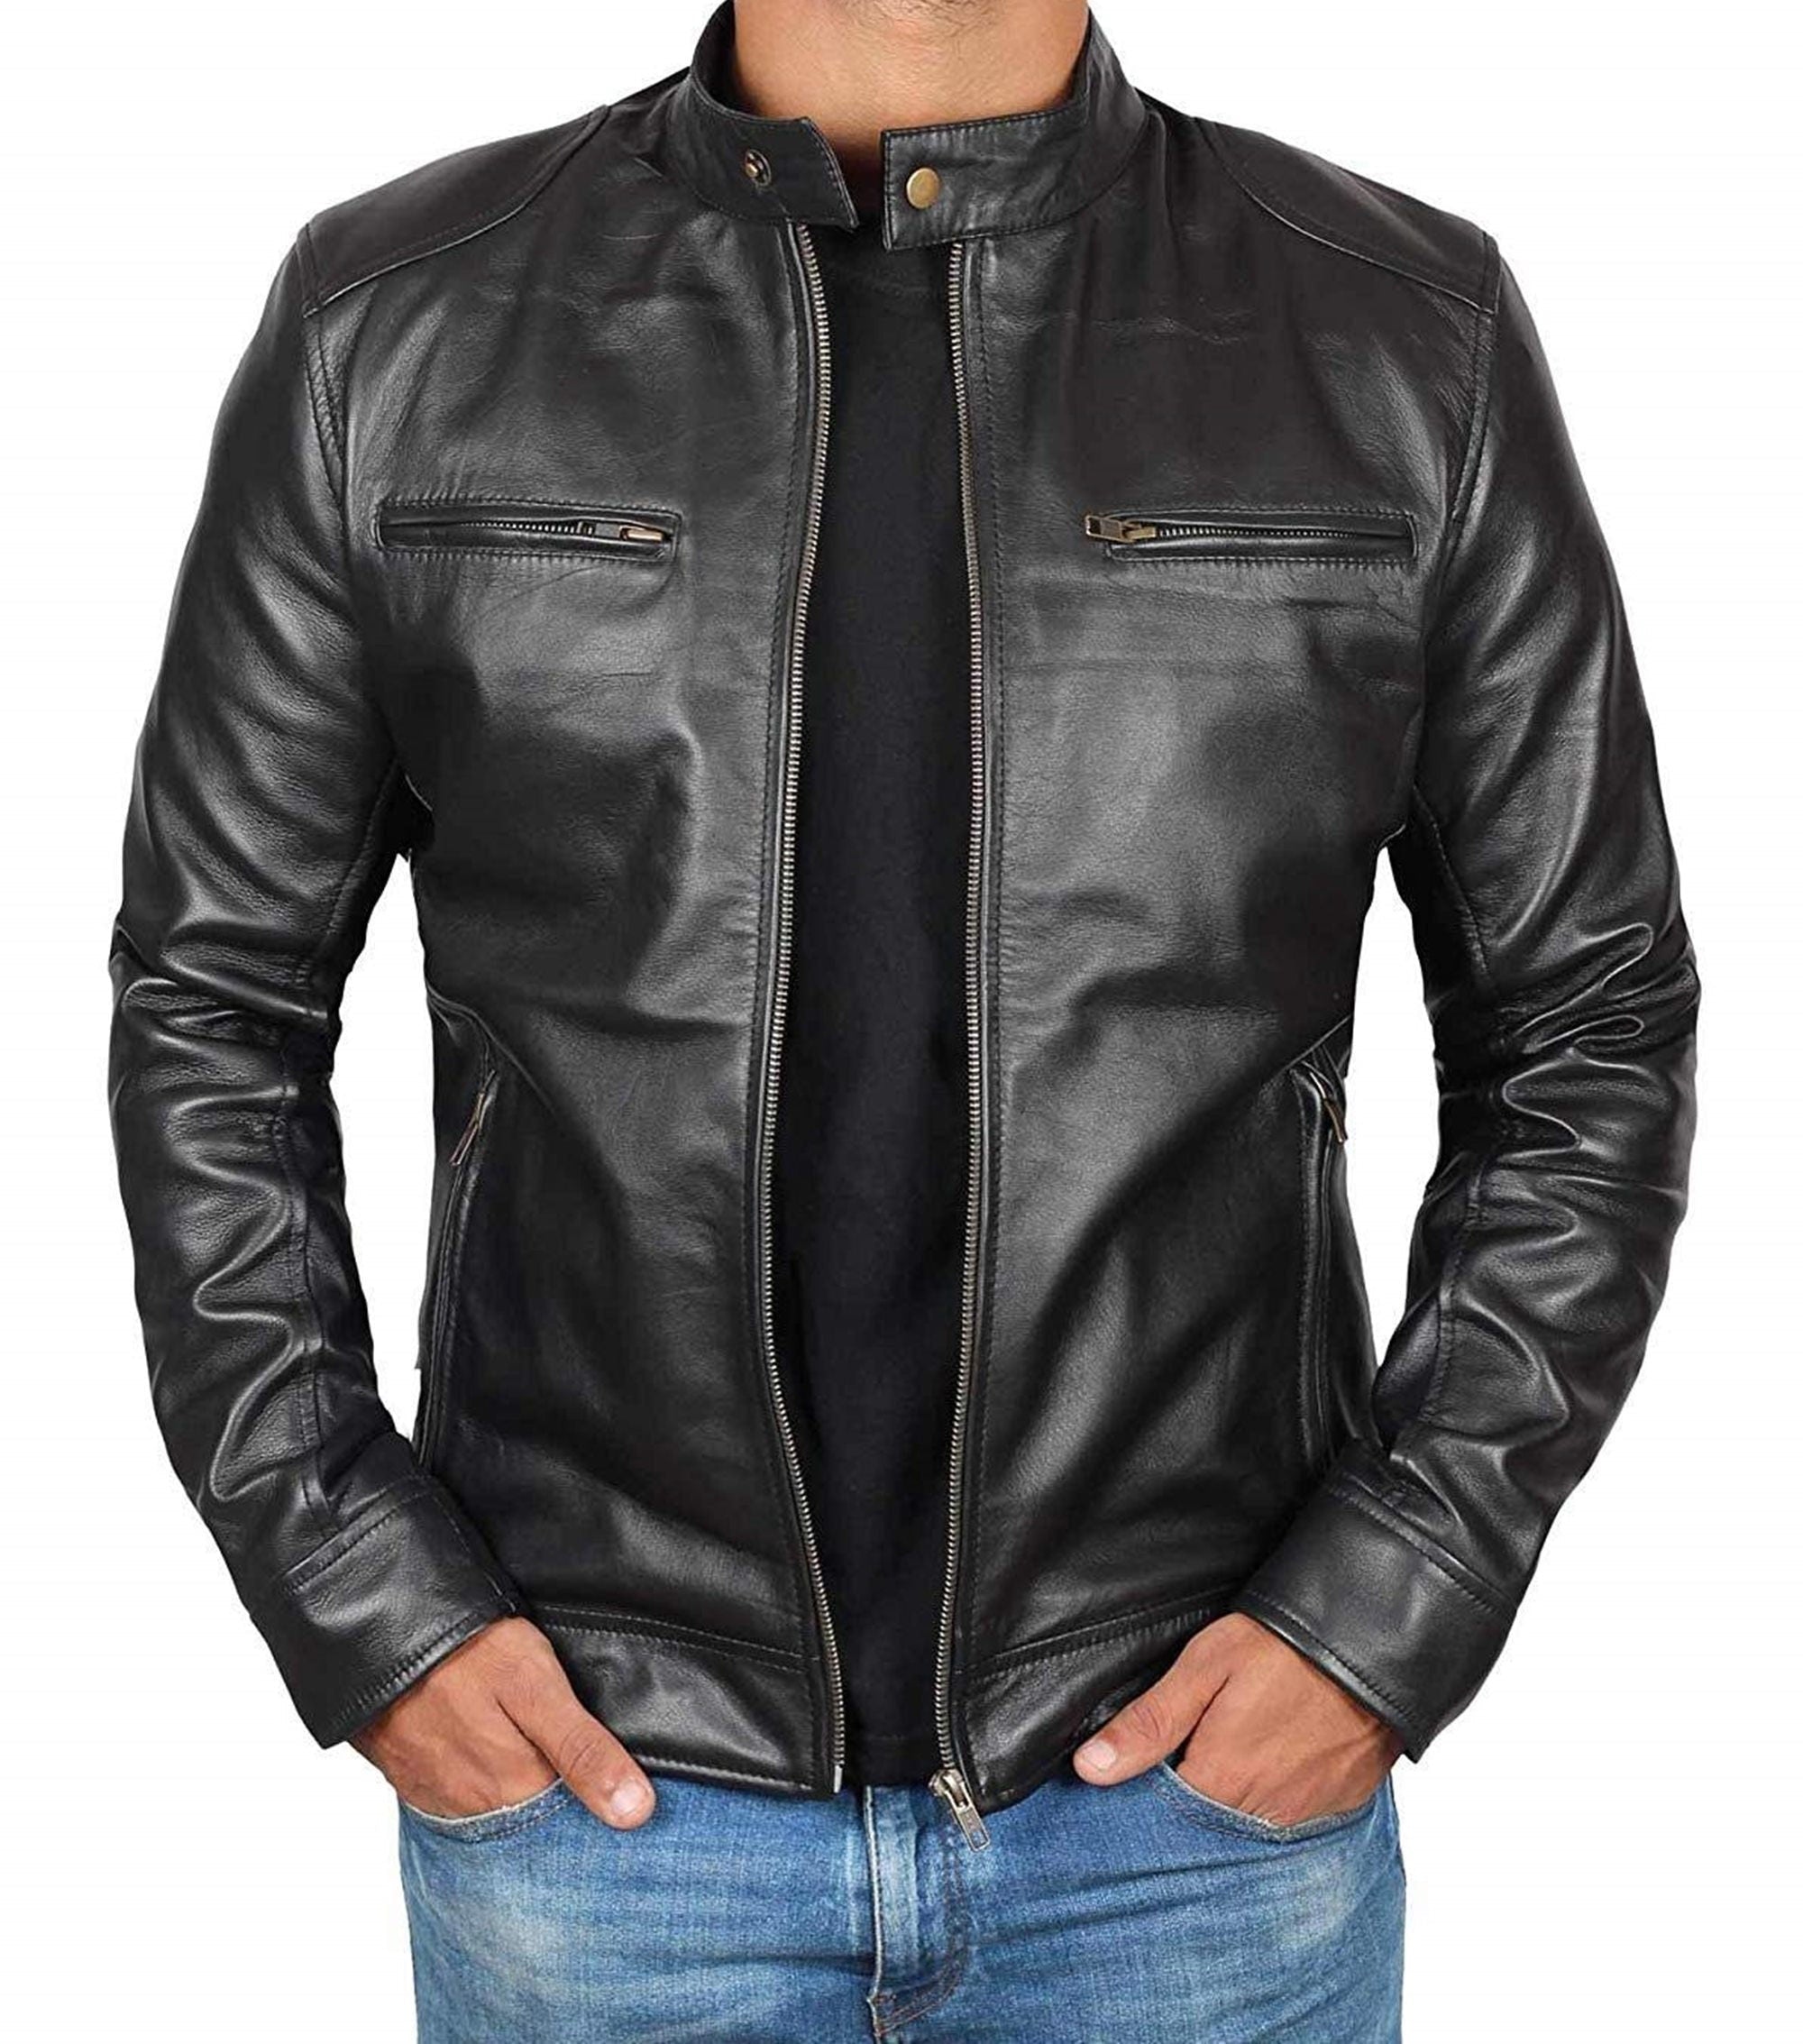 Mens Black Leather Jacket Leather Jacket For Mens